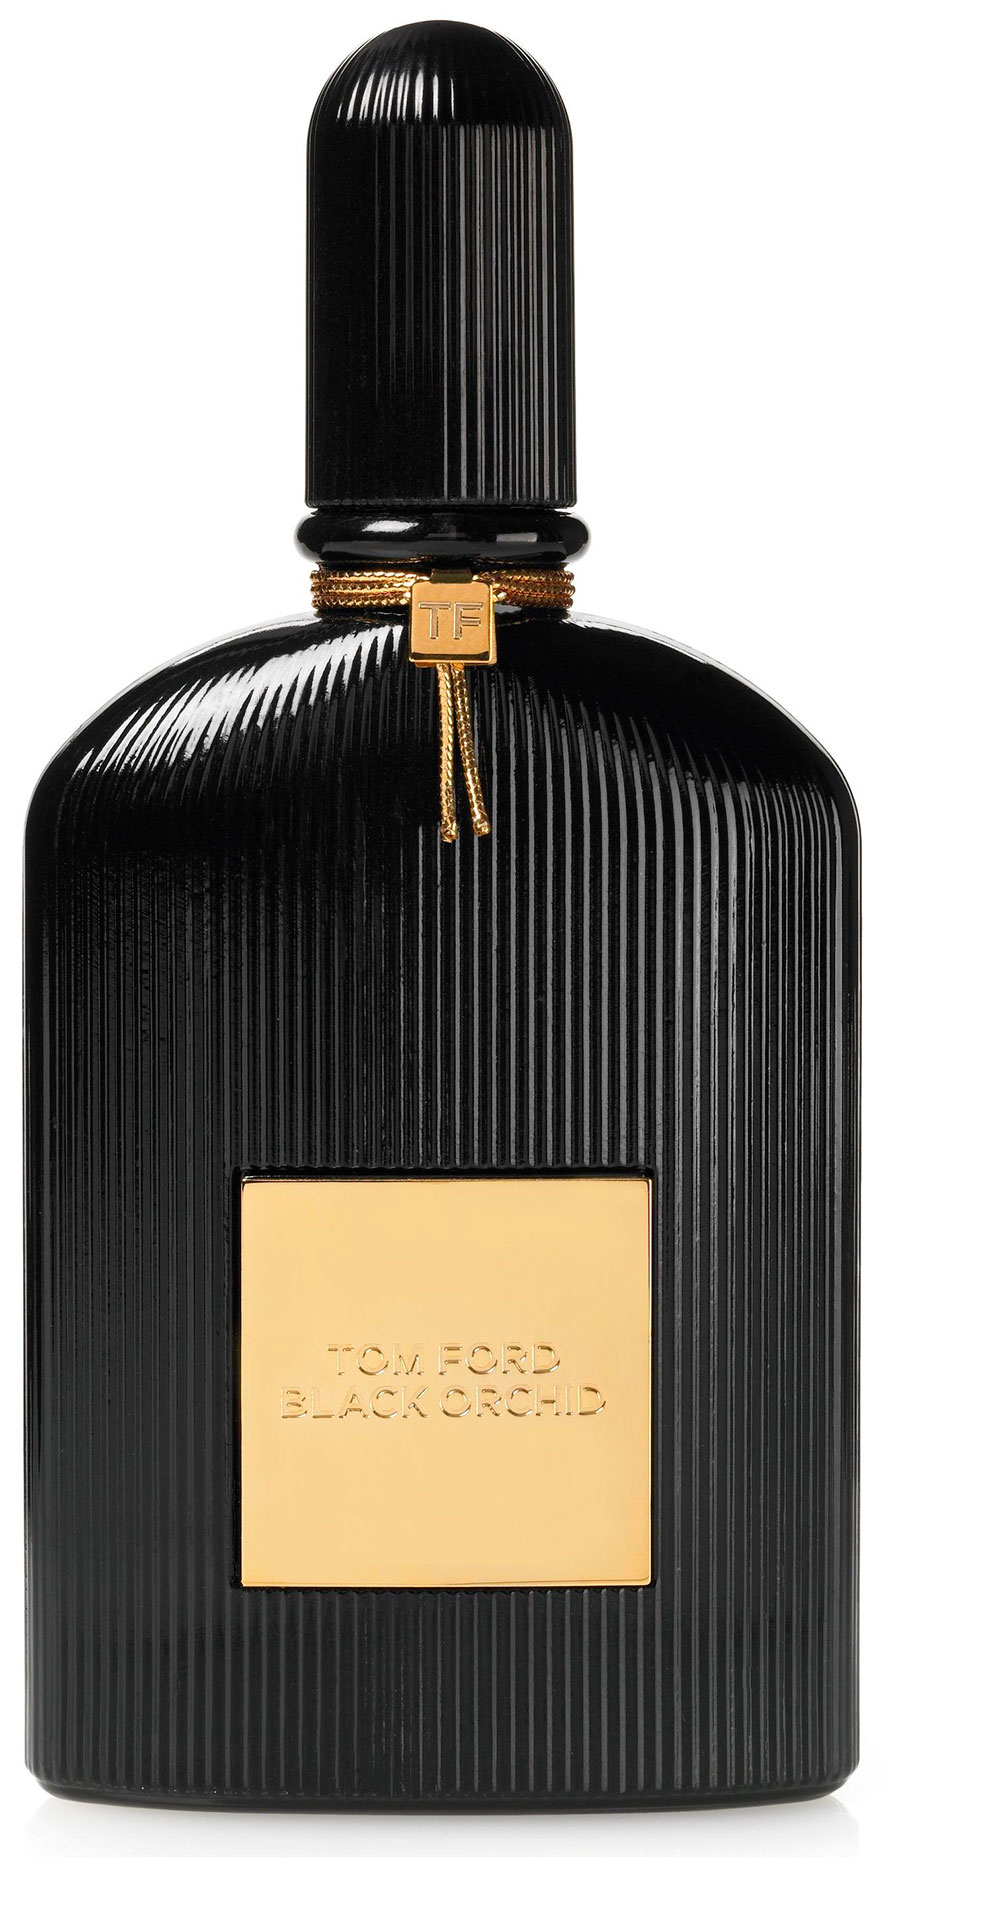 Tom Ford Black Orchid Edp 100 Ml Unisex Parfüm Fiyatı